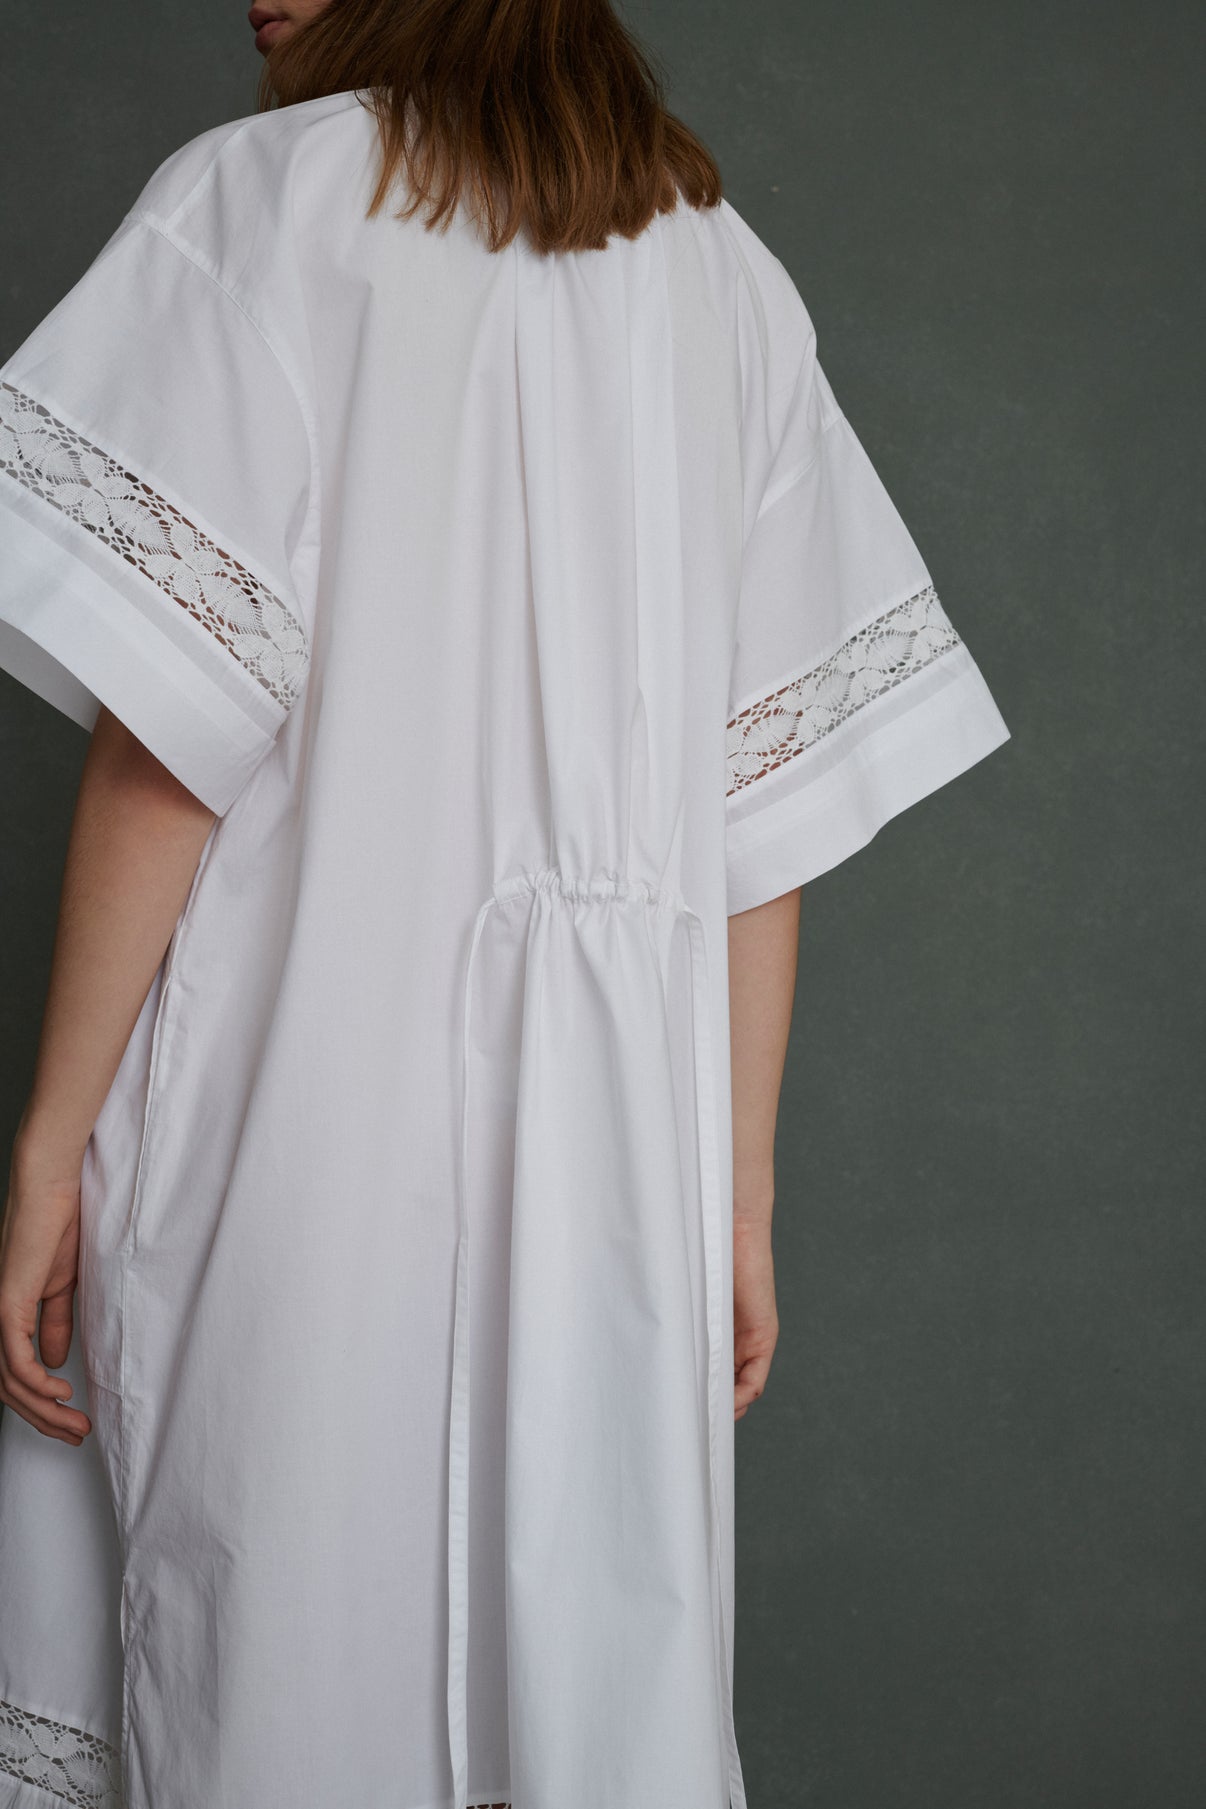 Robe Athena - Blanc - Coton - Femme vue 4